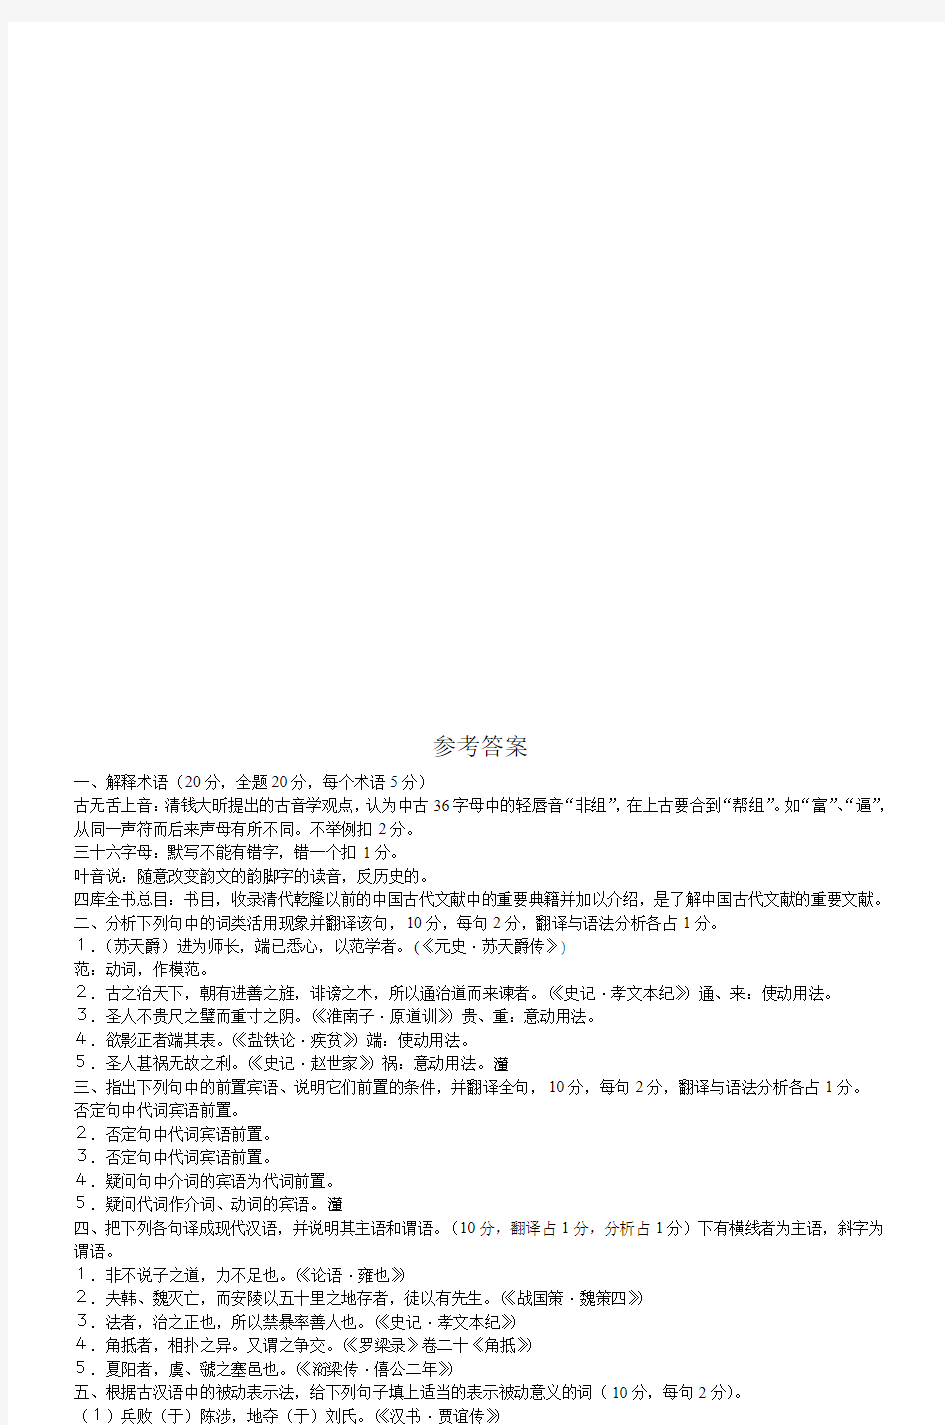 古代汉语试题(下)评分标准以及参考答案